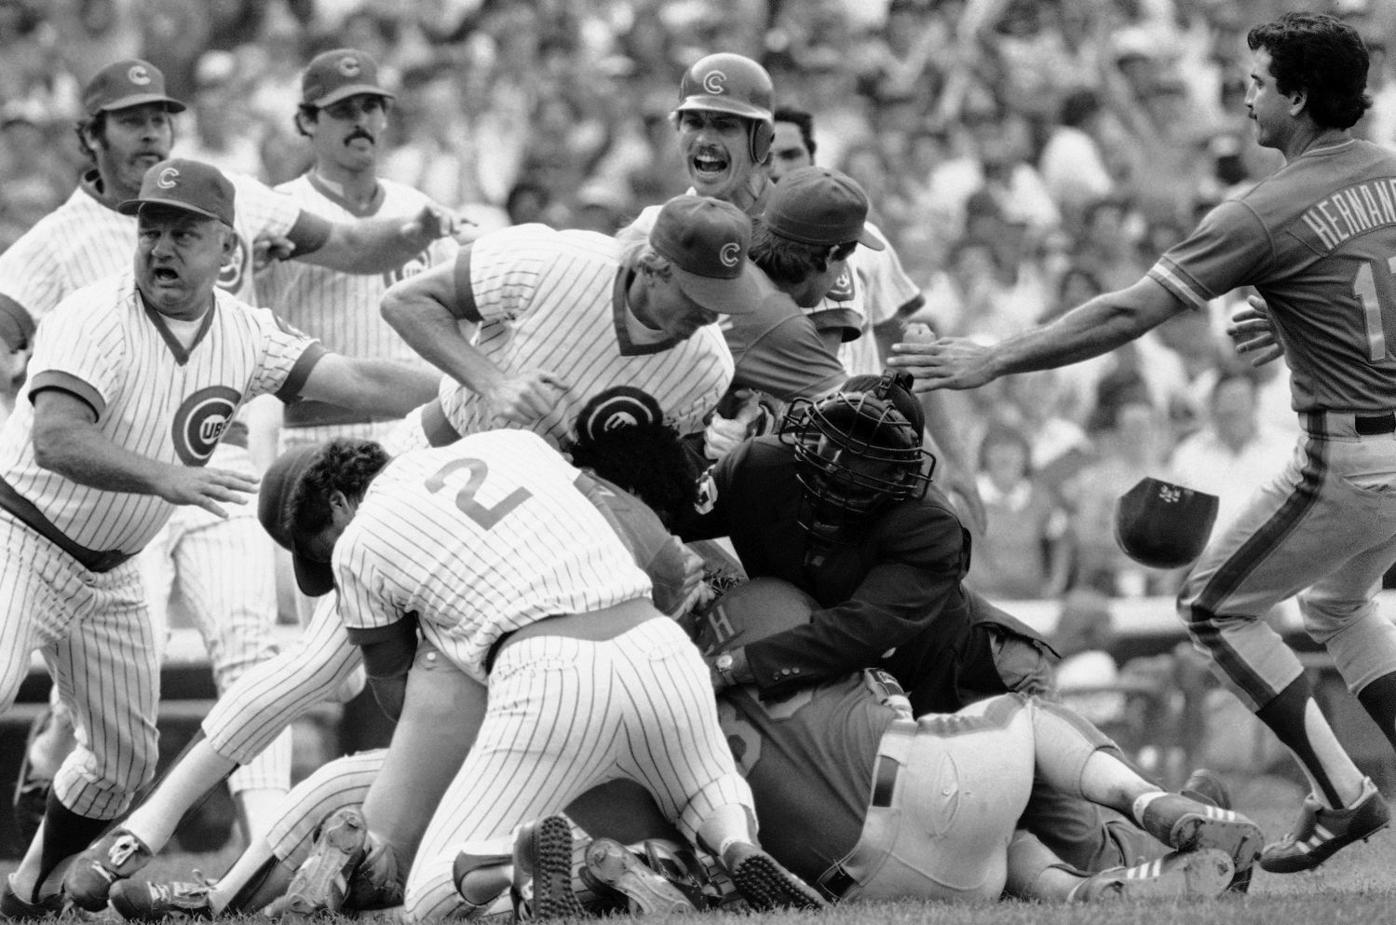 Cubs vs. Mets in 1984